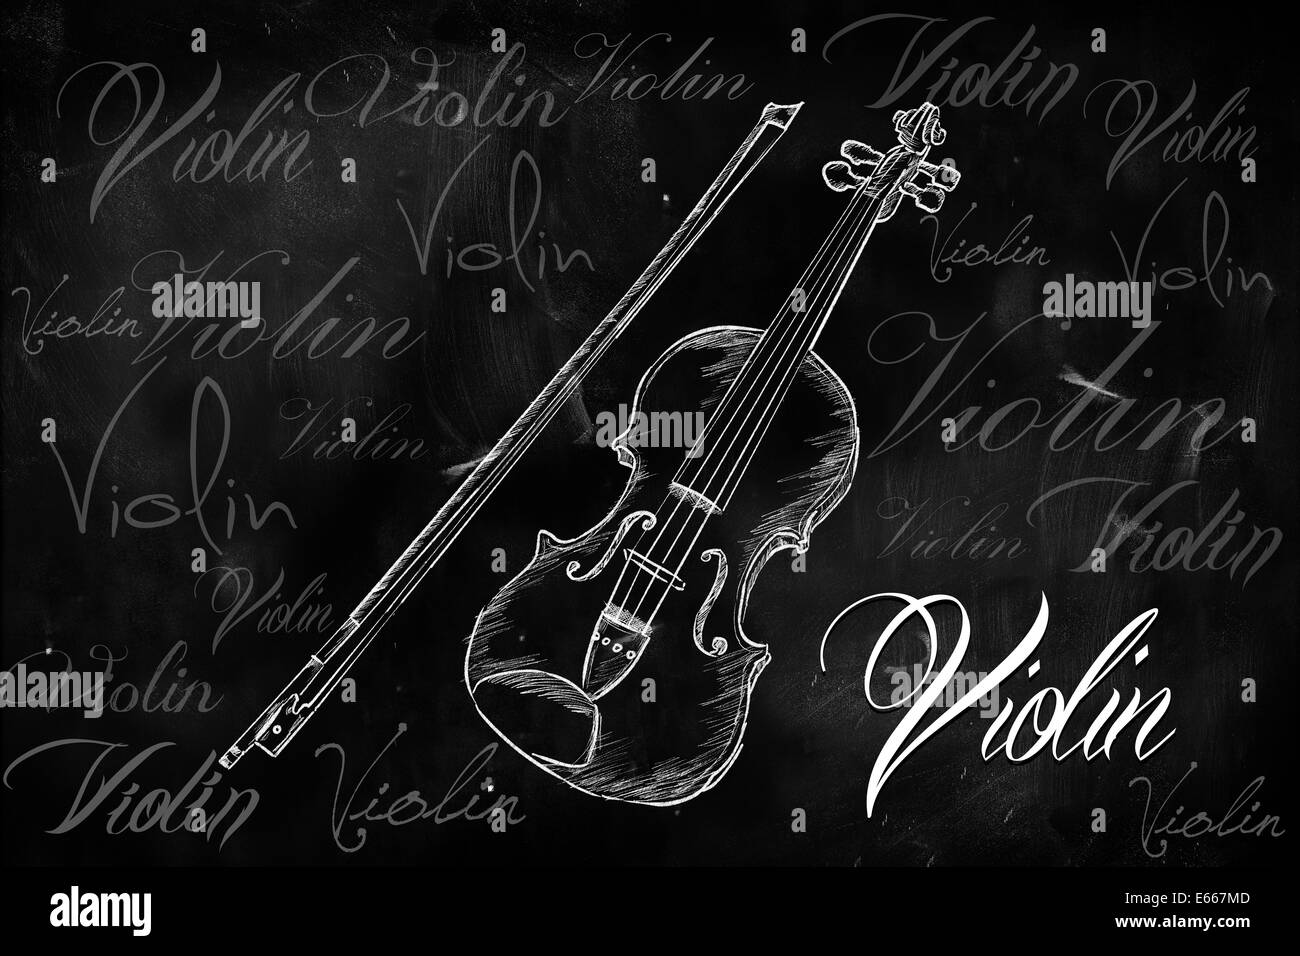 Violon typographie esquisse sur tableau noir peint musique Banque D'Images